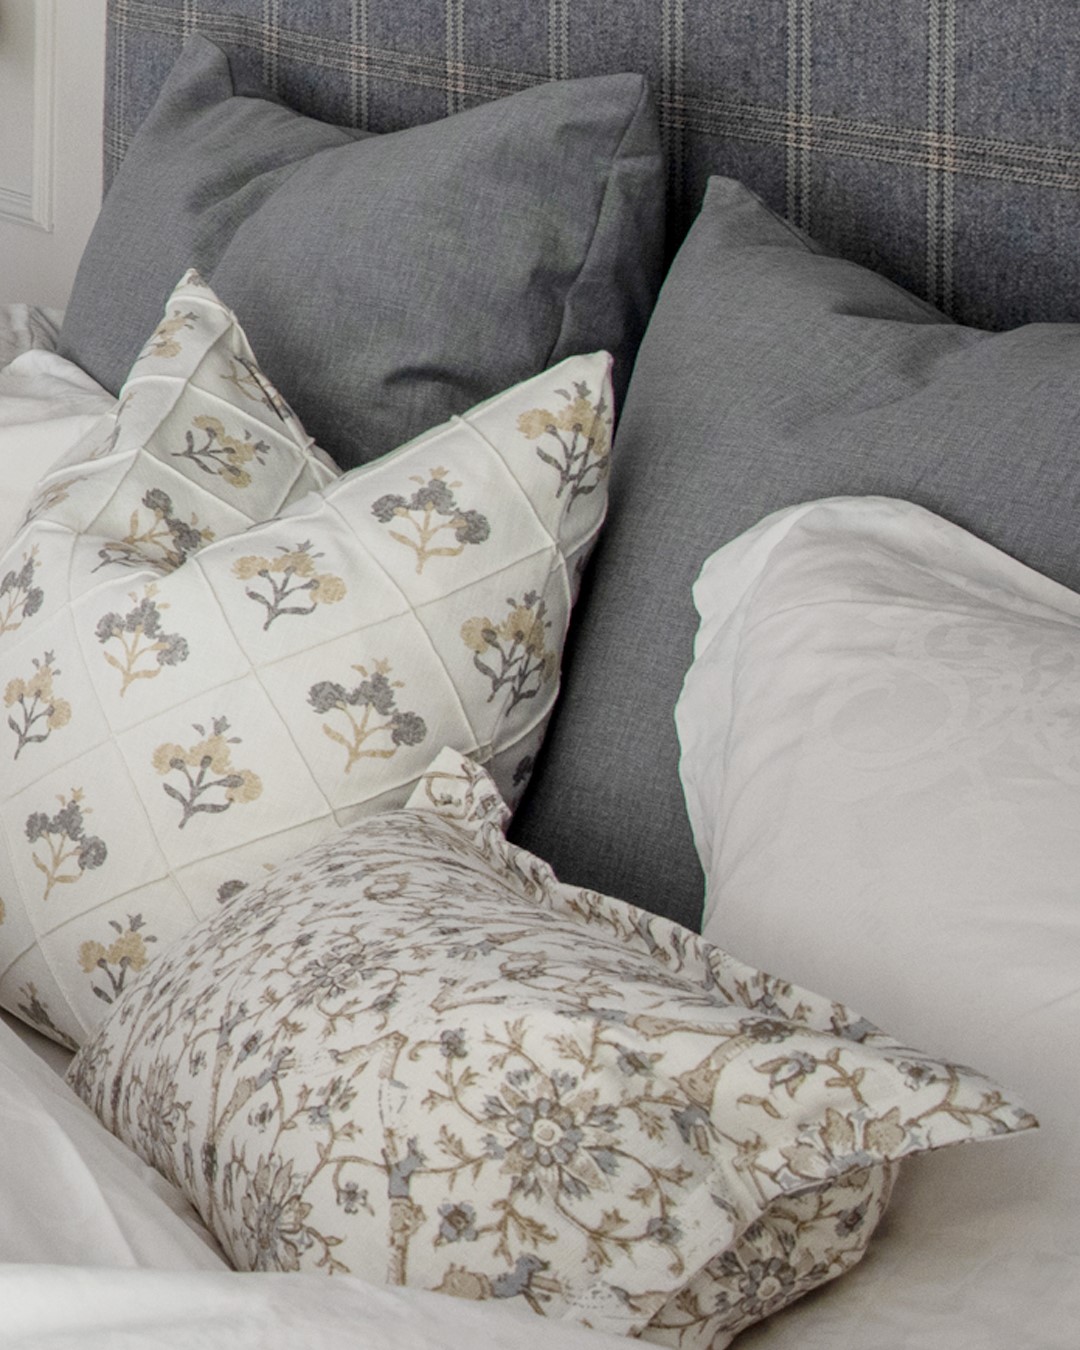 Detaljbilde av puter i ulike størrelser og mønster i seng på soverom med hotellfølelse. Foto.